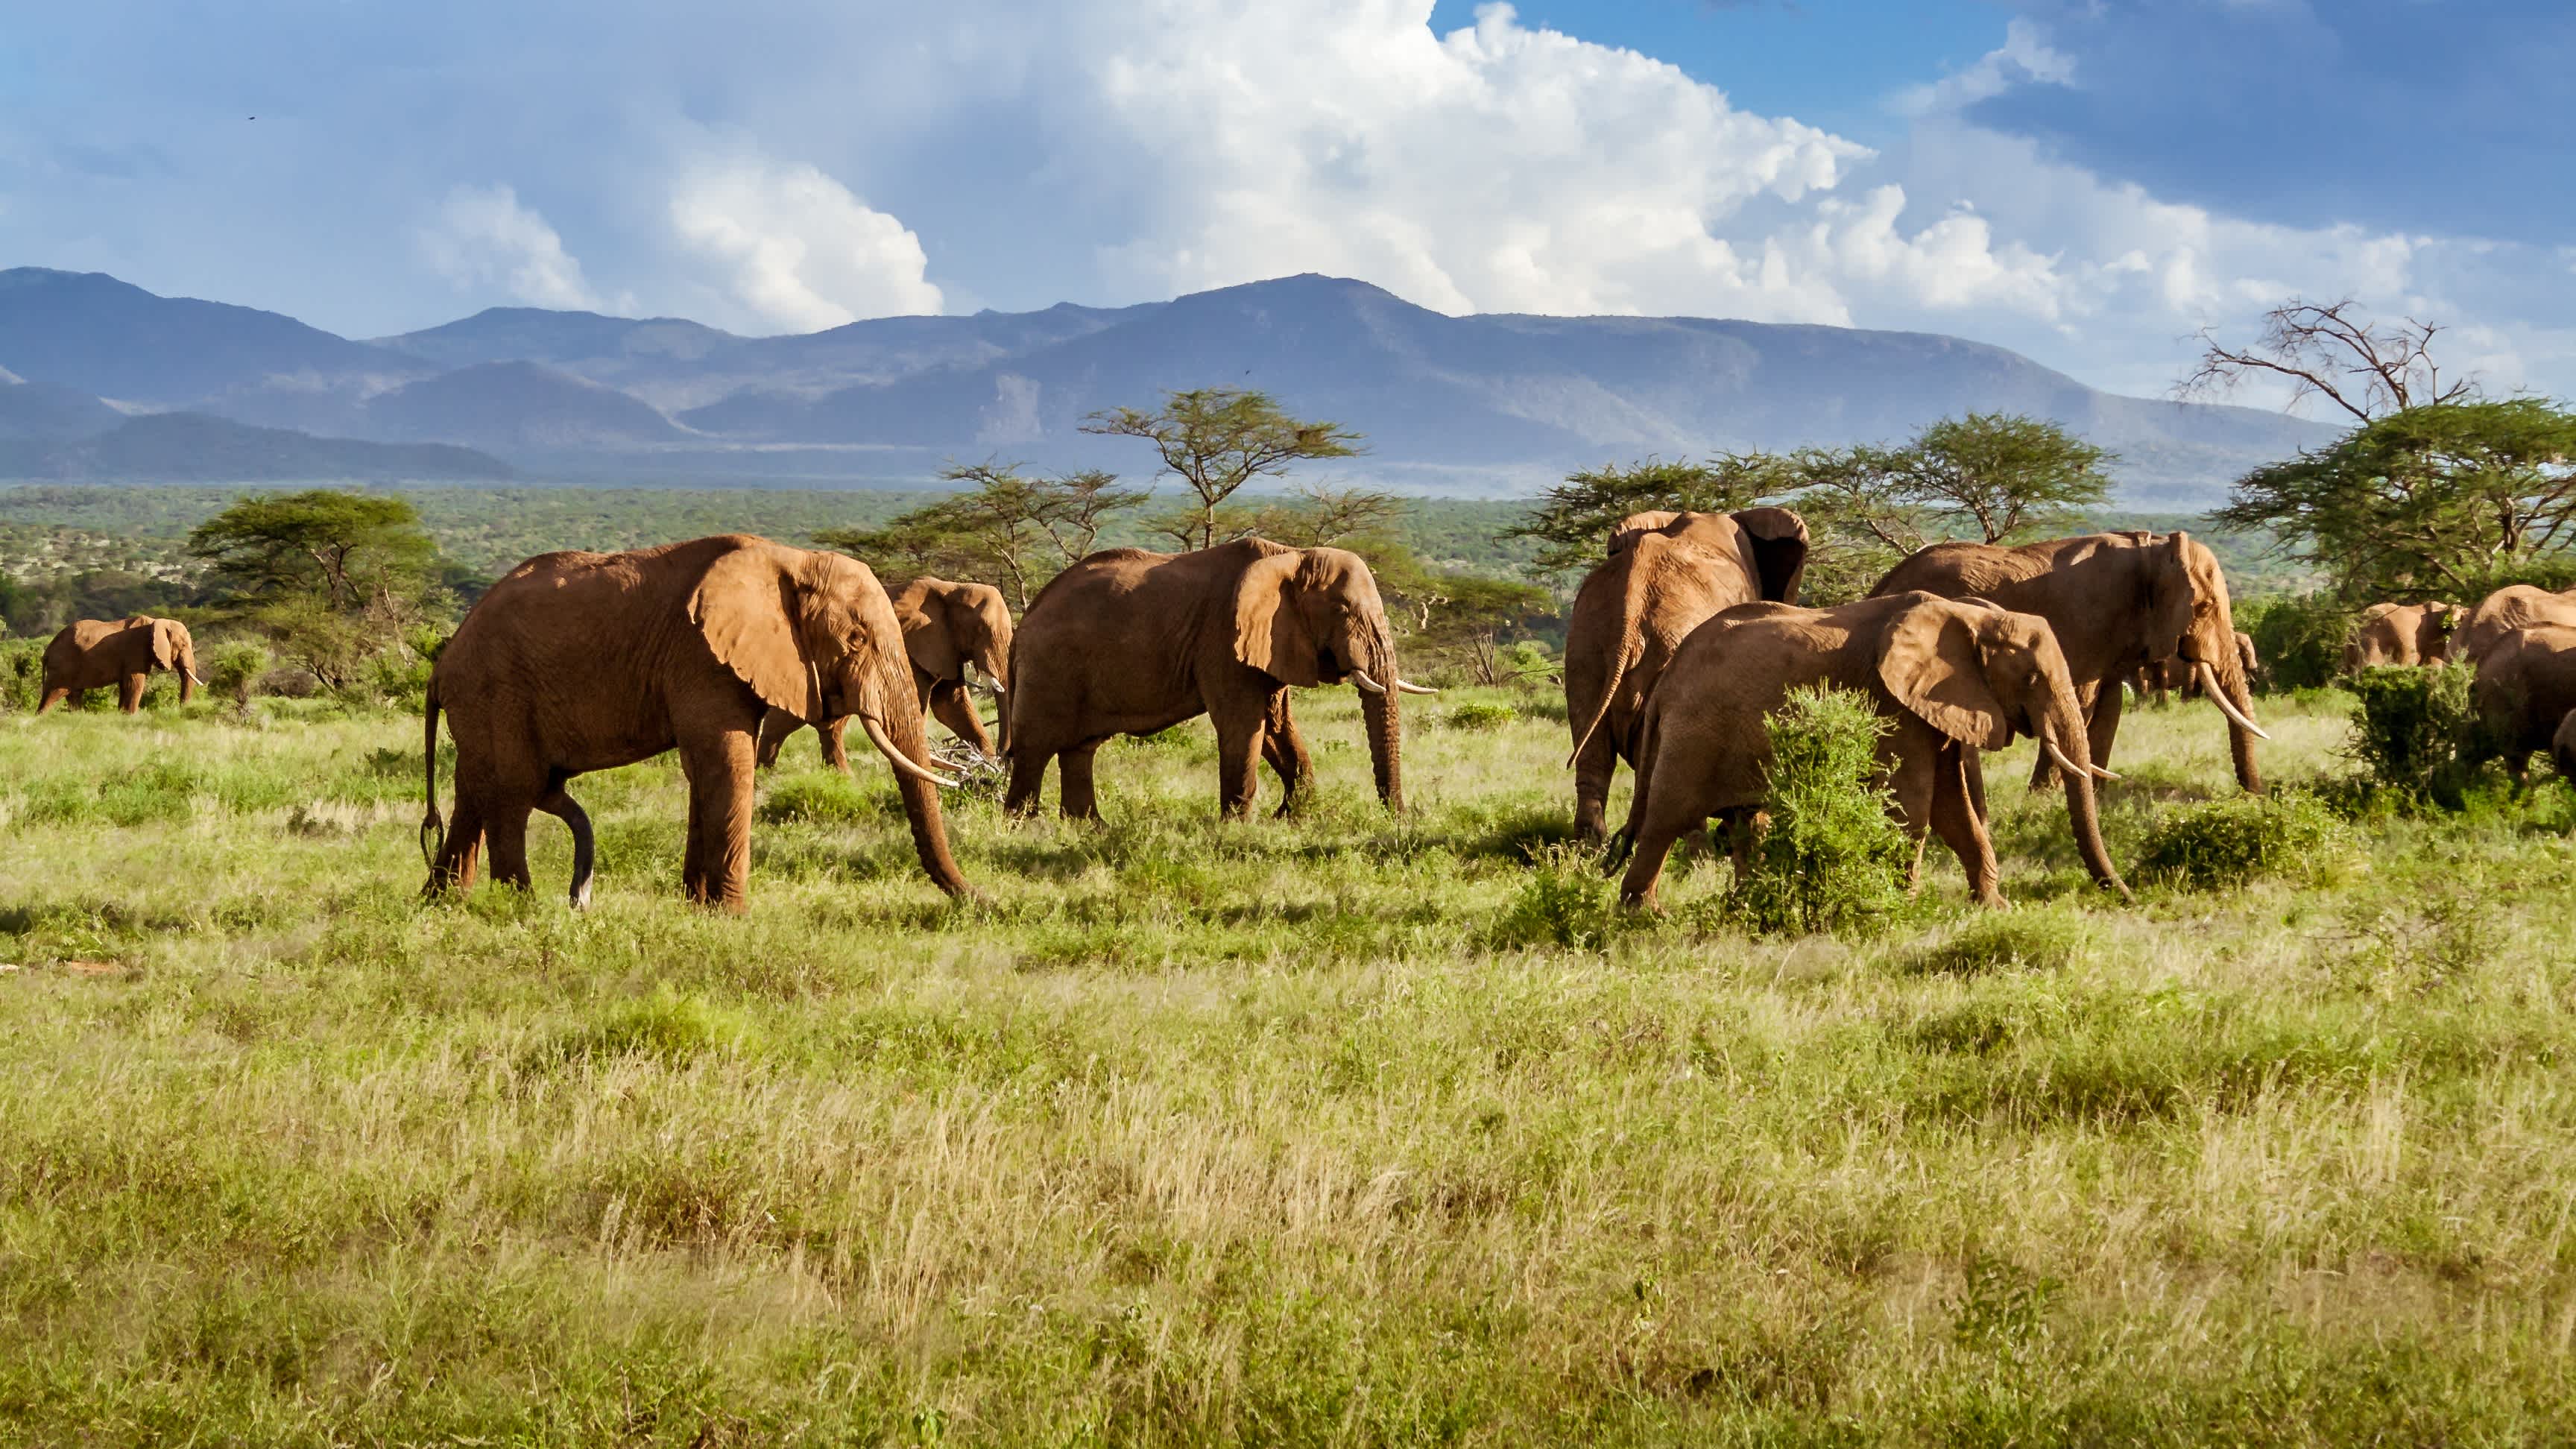 Herde von Elefanten in der afrikanischen Savanne, Südafrika

